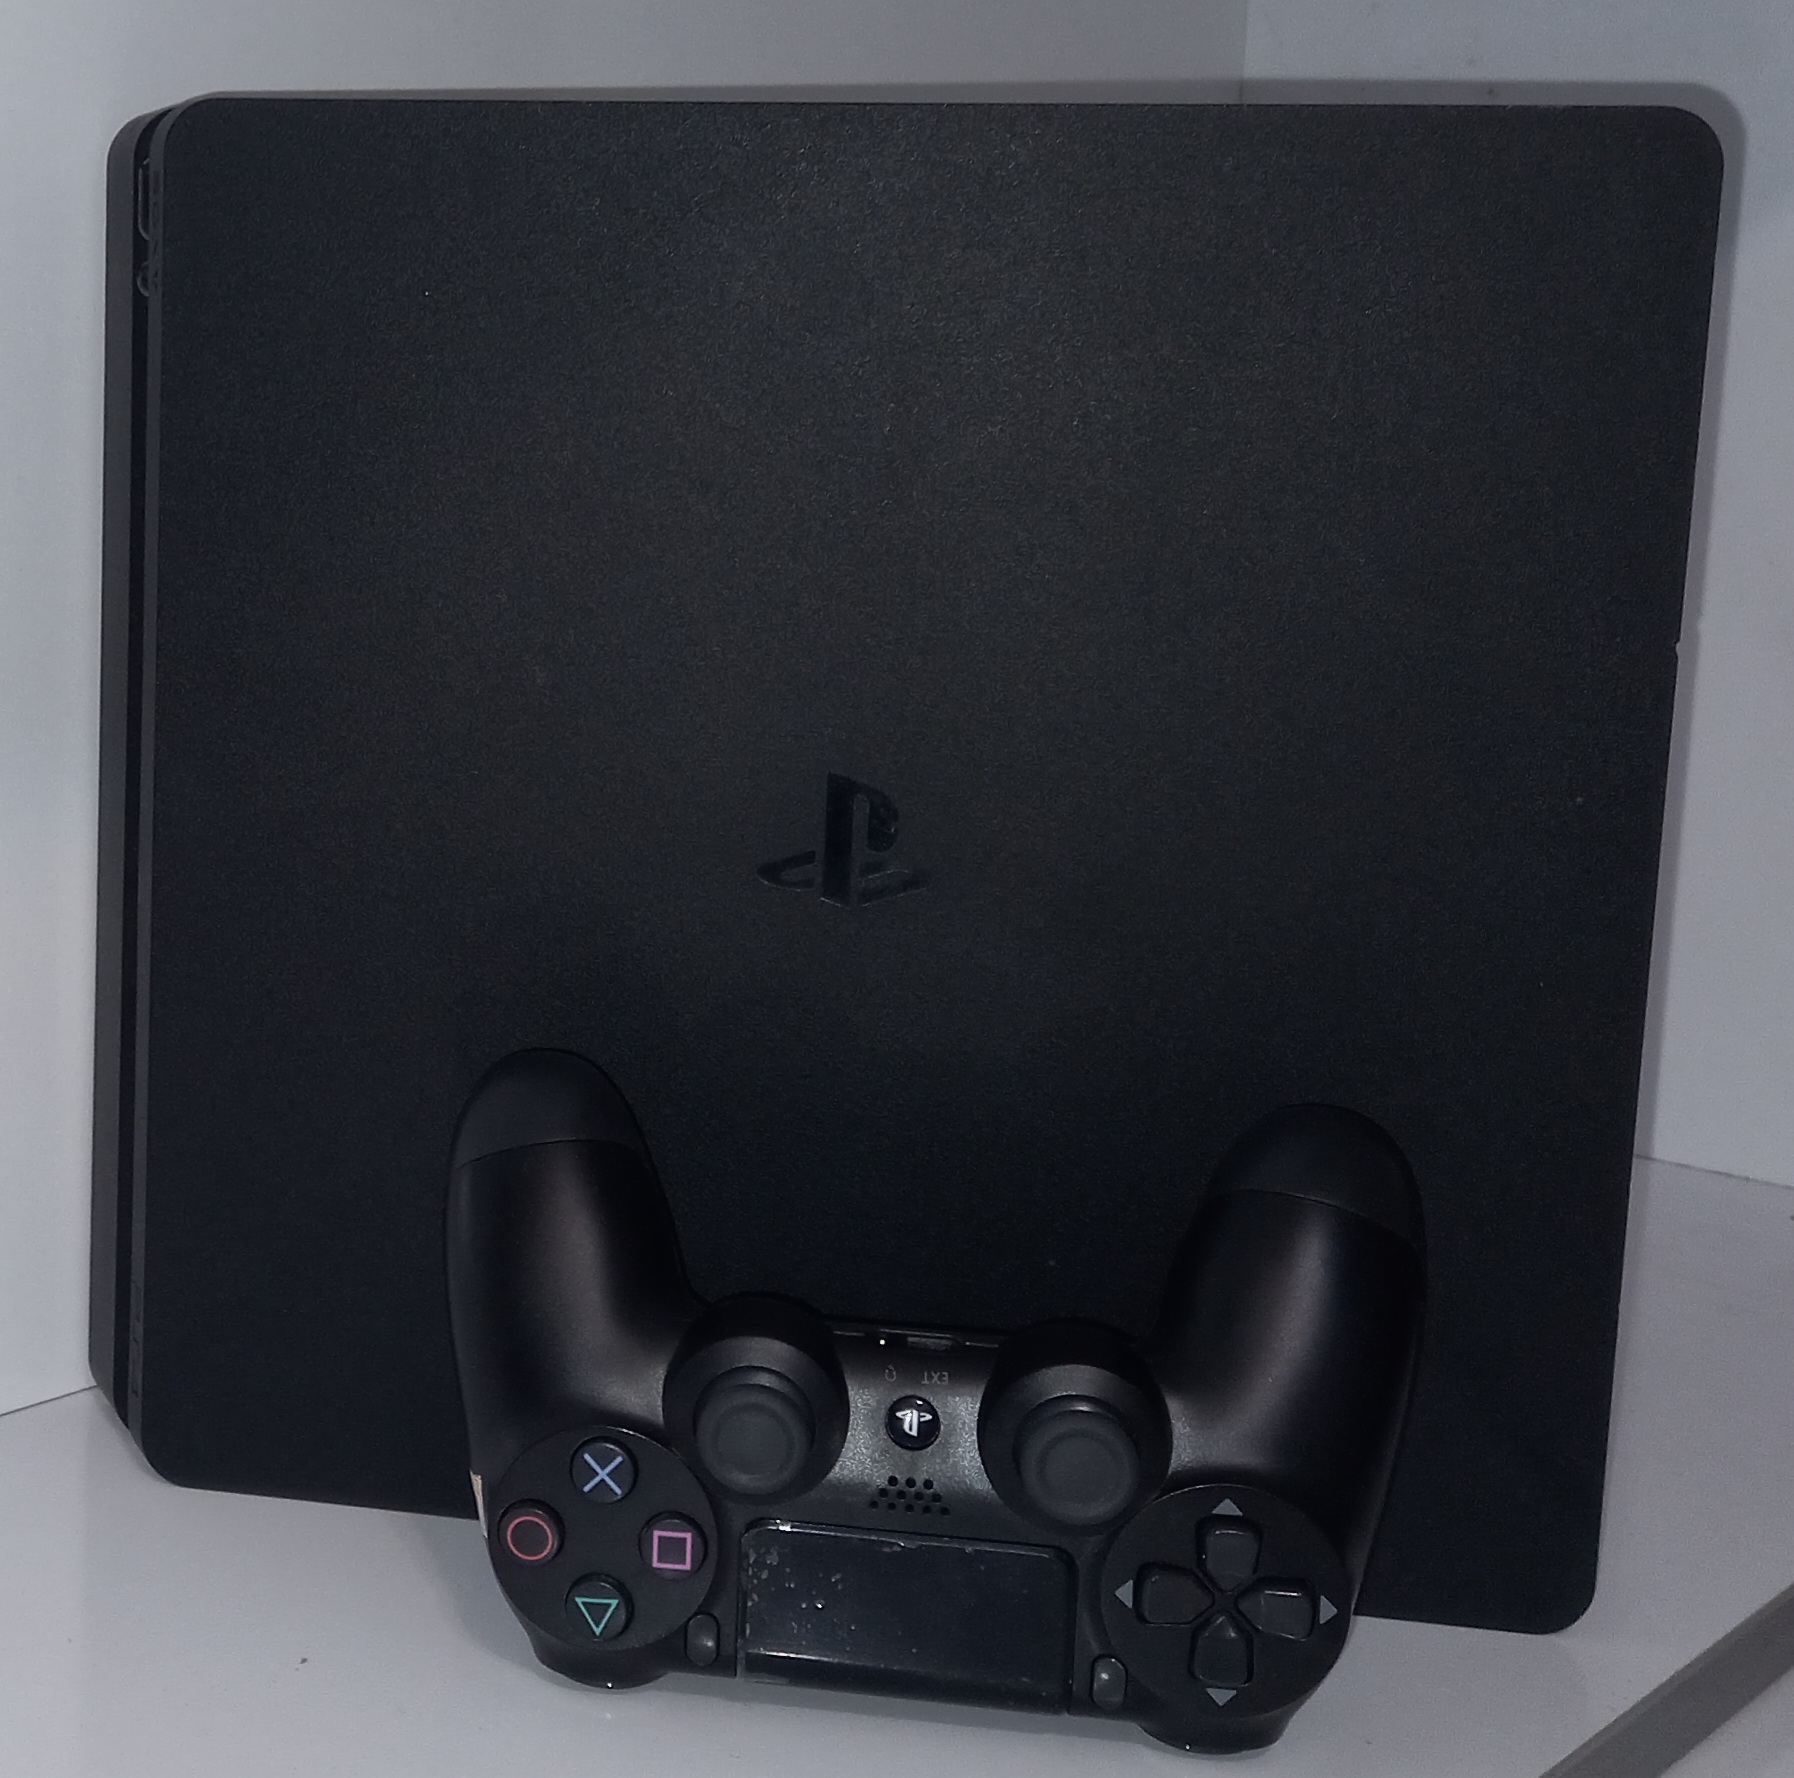 کنسول بازی سونی PS4 Slim کارکرده |(دستگاه پلمپ) حافظه 1 ترابایت به همراه یک دسته اضافه ا PlayStation 4 Slim 1TB + 1 extra controller